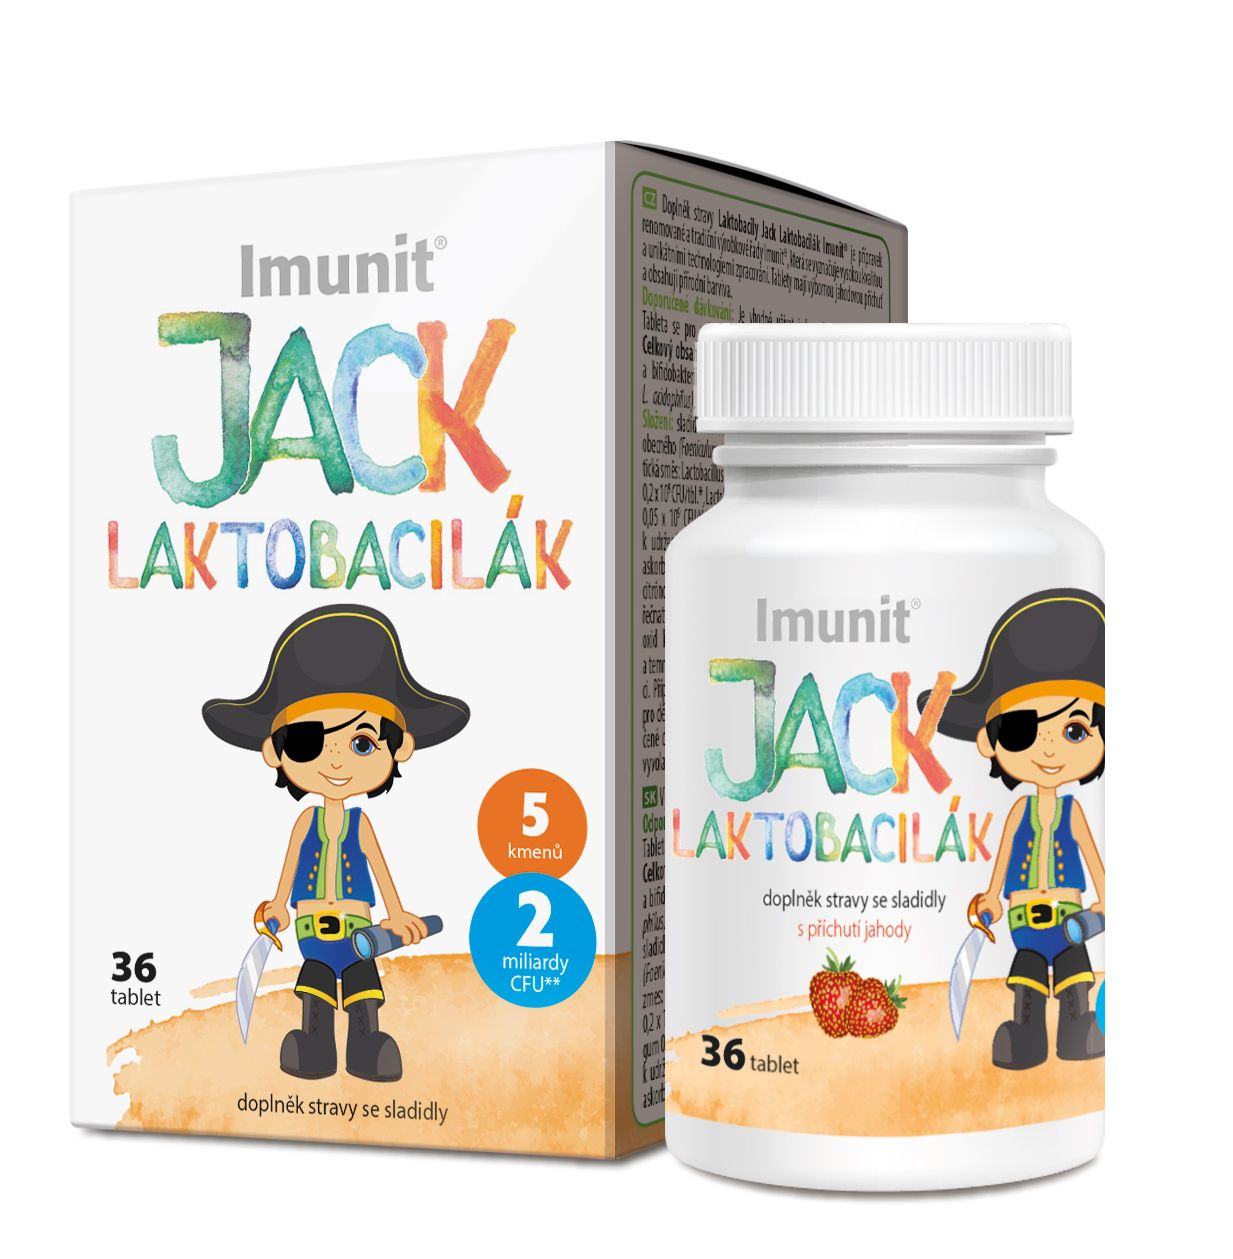 Imunit JACK LAKTOBACILÁK 36 tablet Imunit